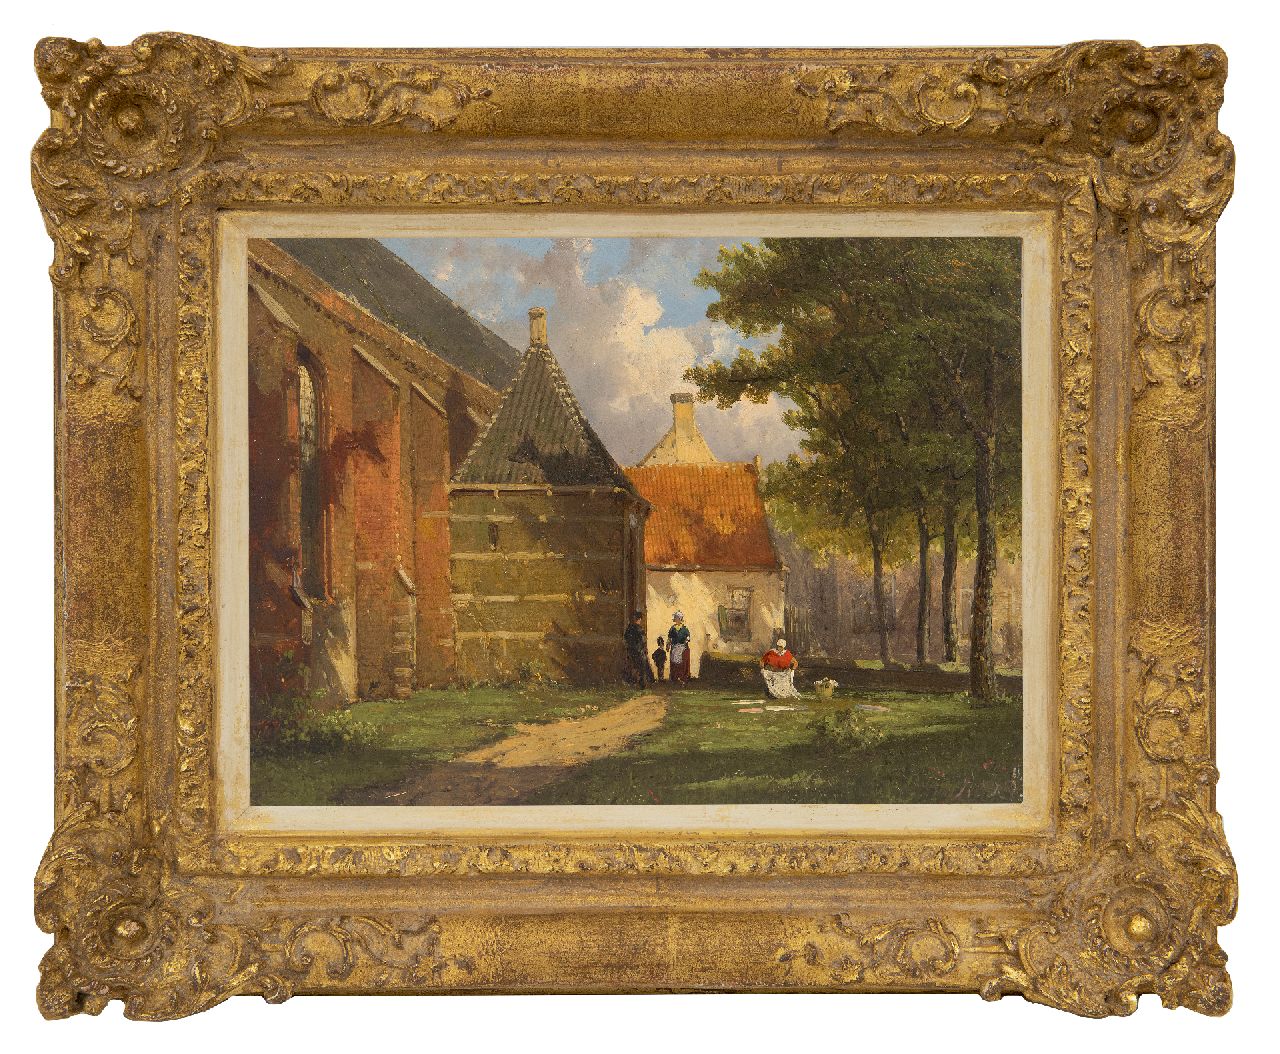 Koekkoek W.  | Willem Koekkoek | Schilderijen te koop aangeboden | Zonnig gezicht op de Zuiderkerk in Enkhuizen, olieverf op paneel 19,1 x 25,6 cm, gesigneerd rechtsonder met initialen